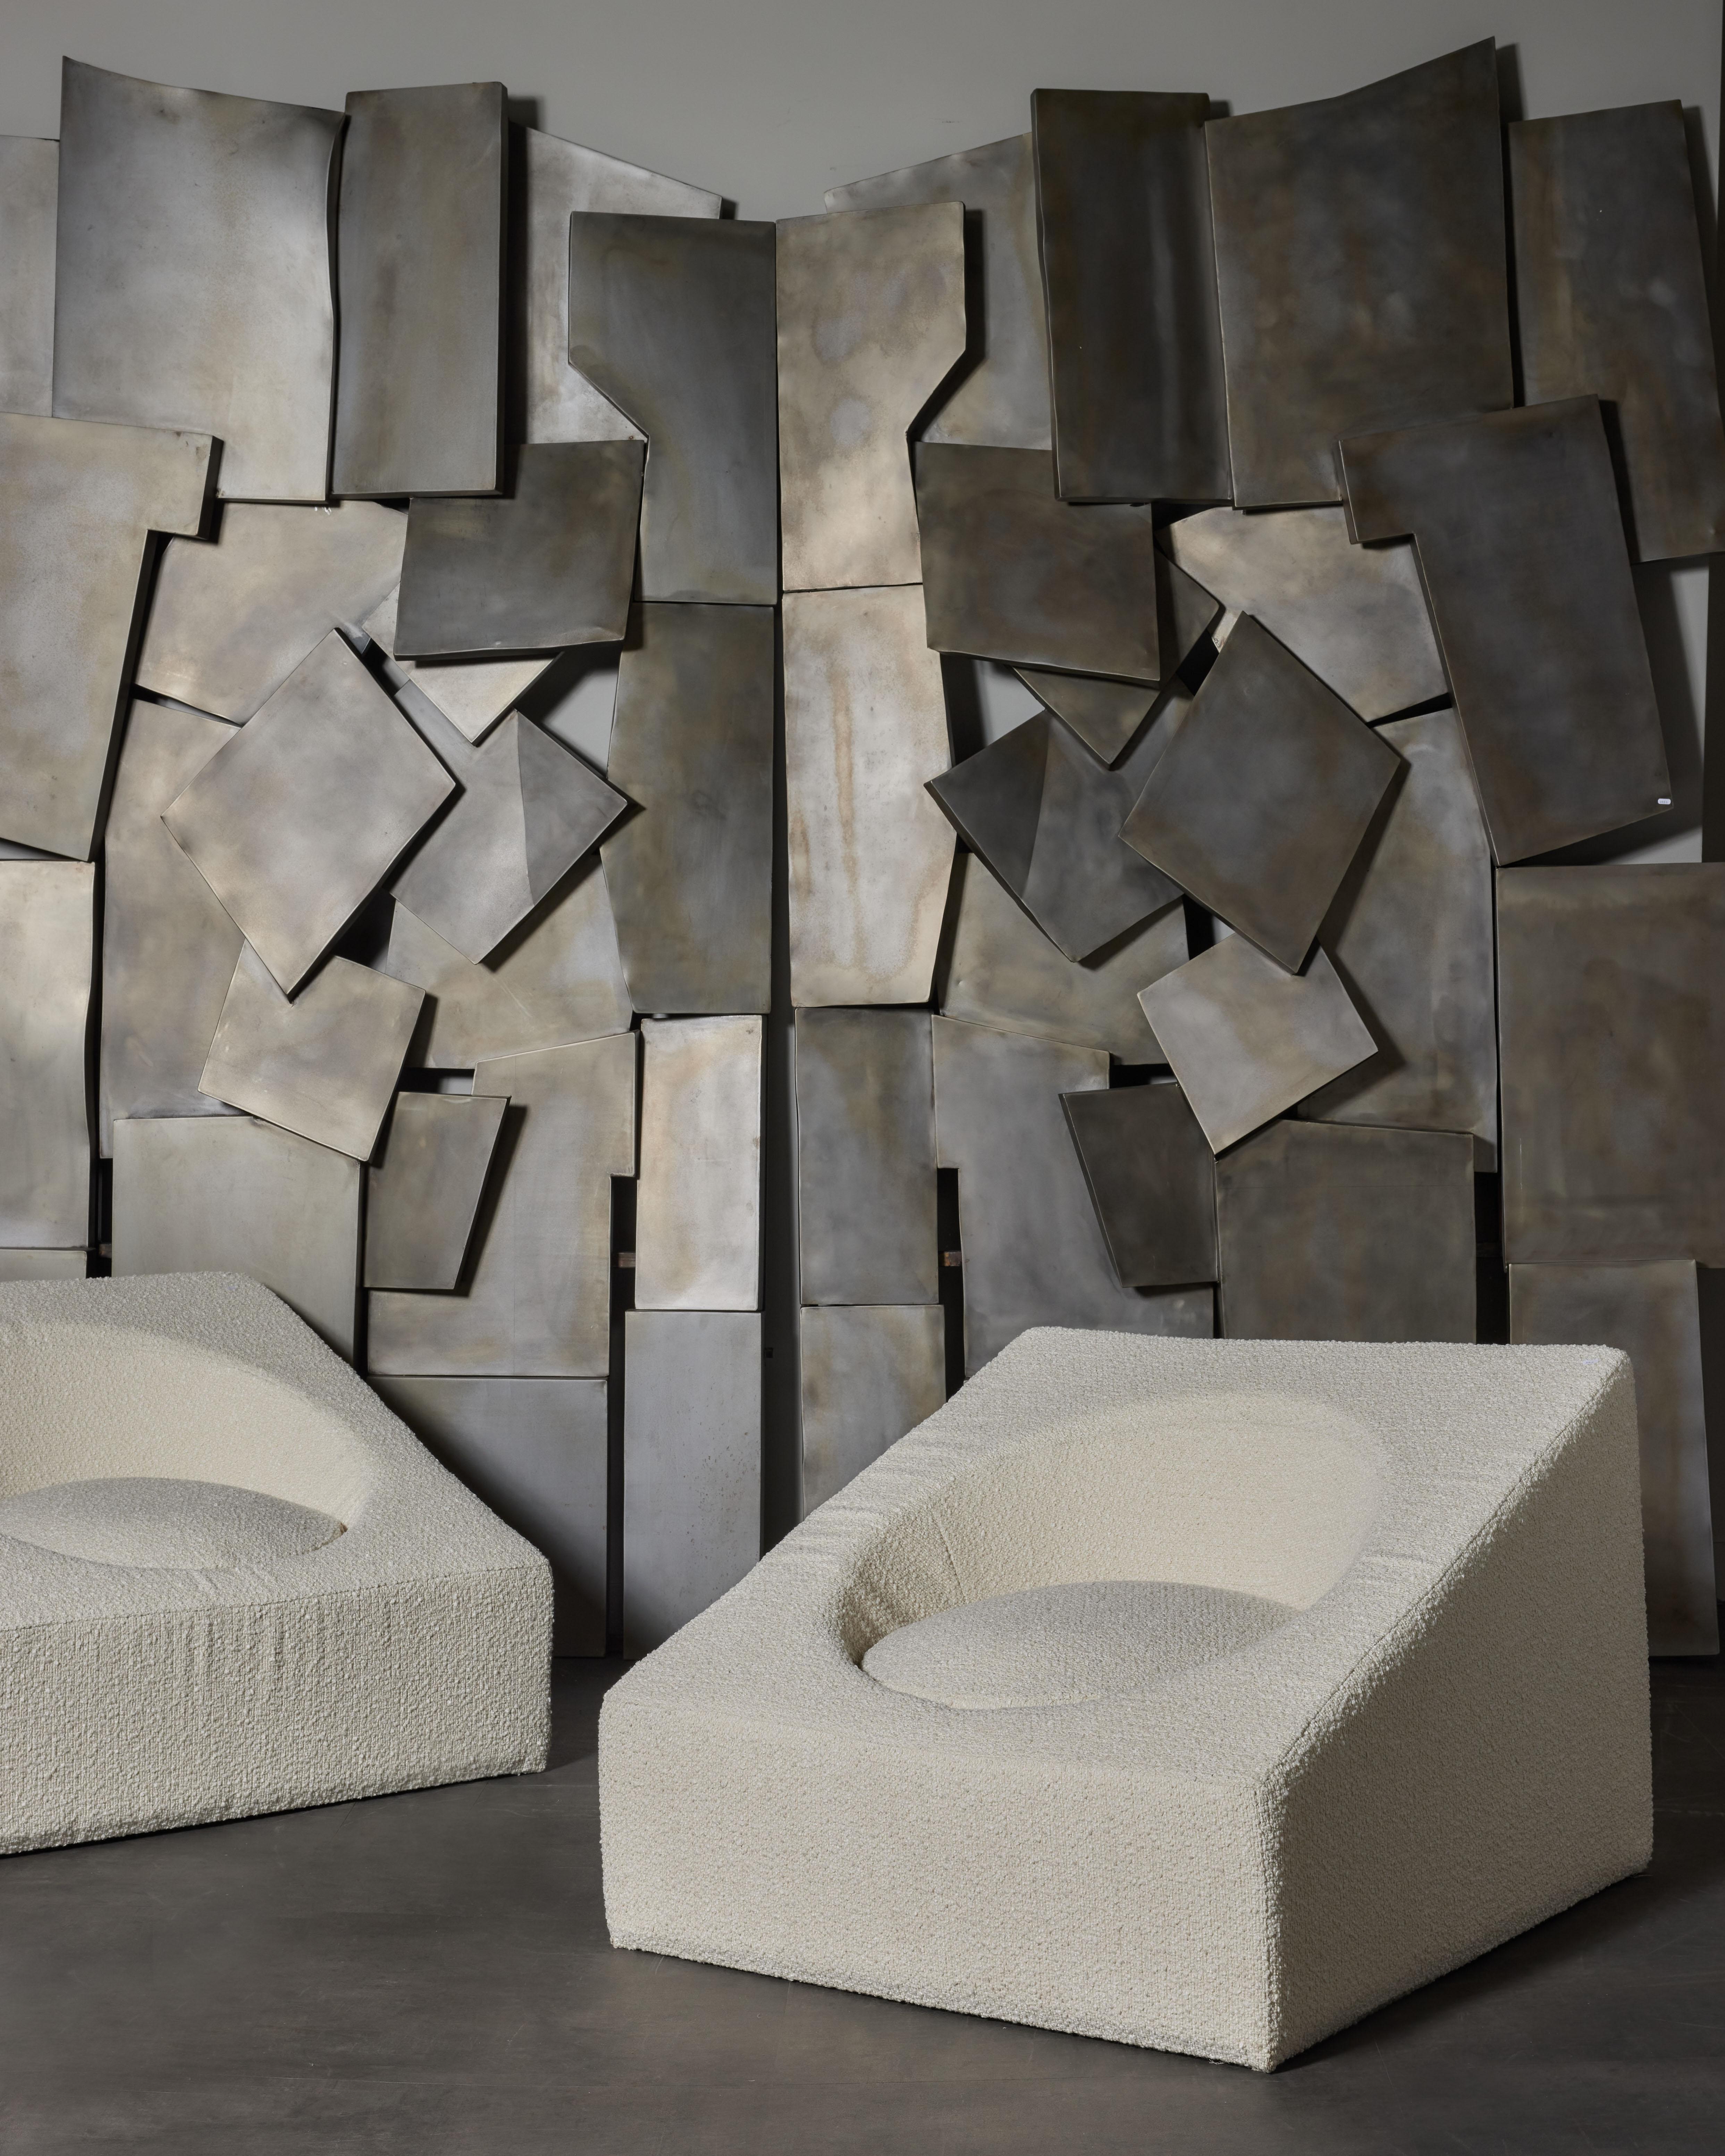 Paire de fauteuils carrés garnis d'un tissu bouclette.
Création par le Studio Glustin.
France, 2023